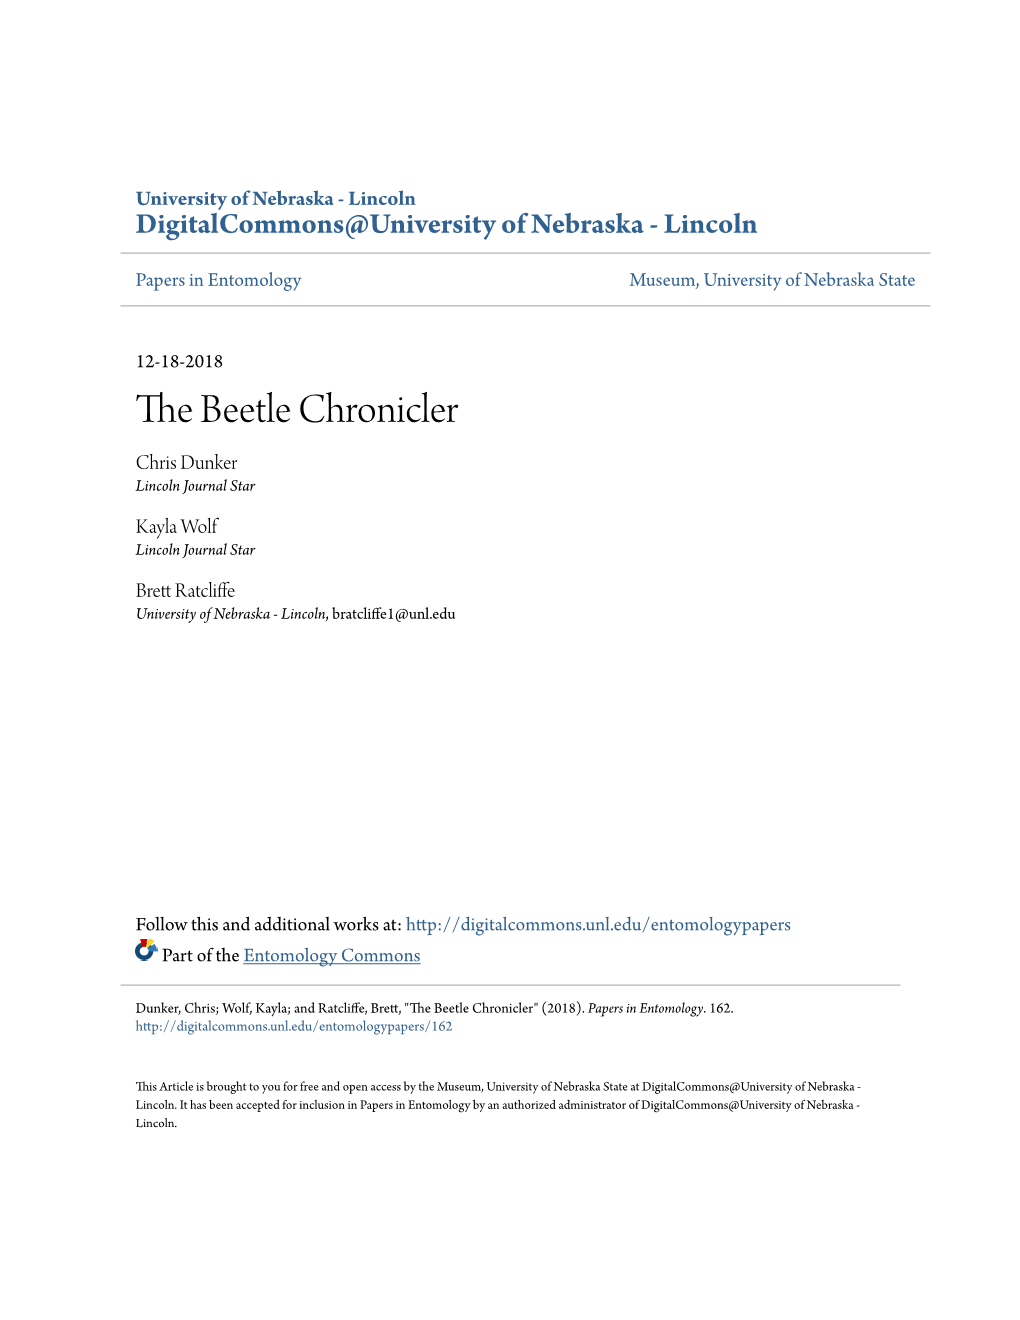 The Beetle Chronicler Chris Dunker Lincoln Journal Star